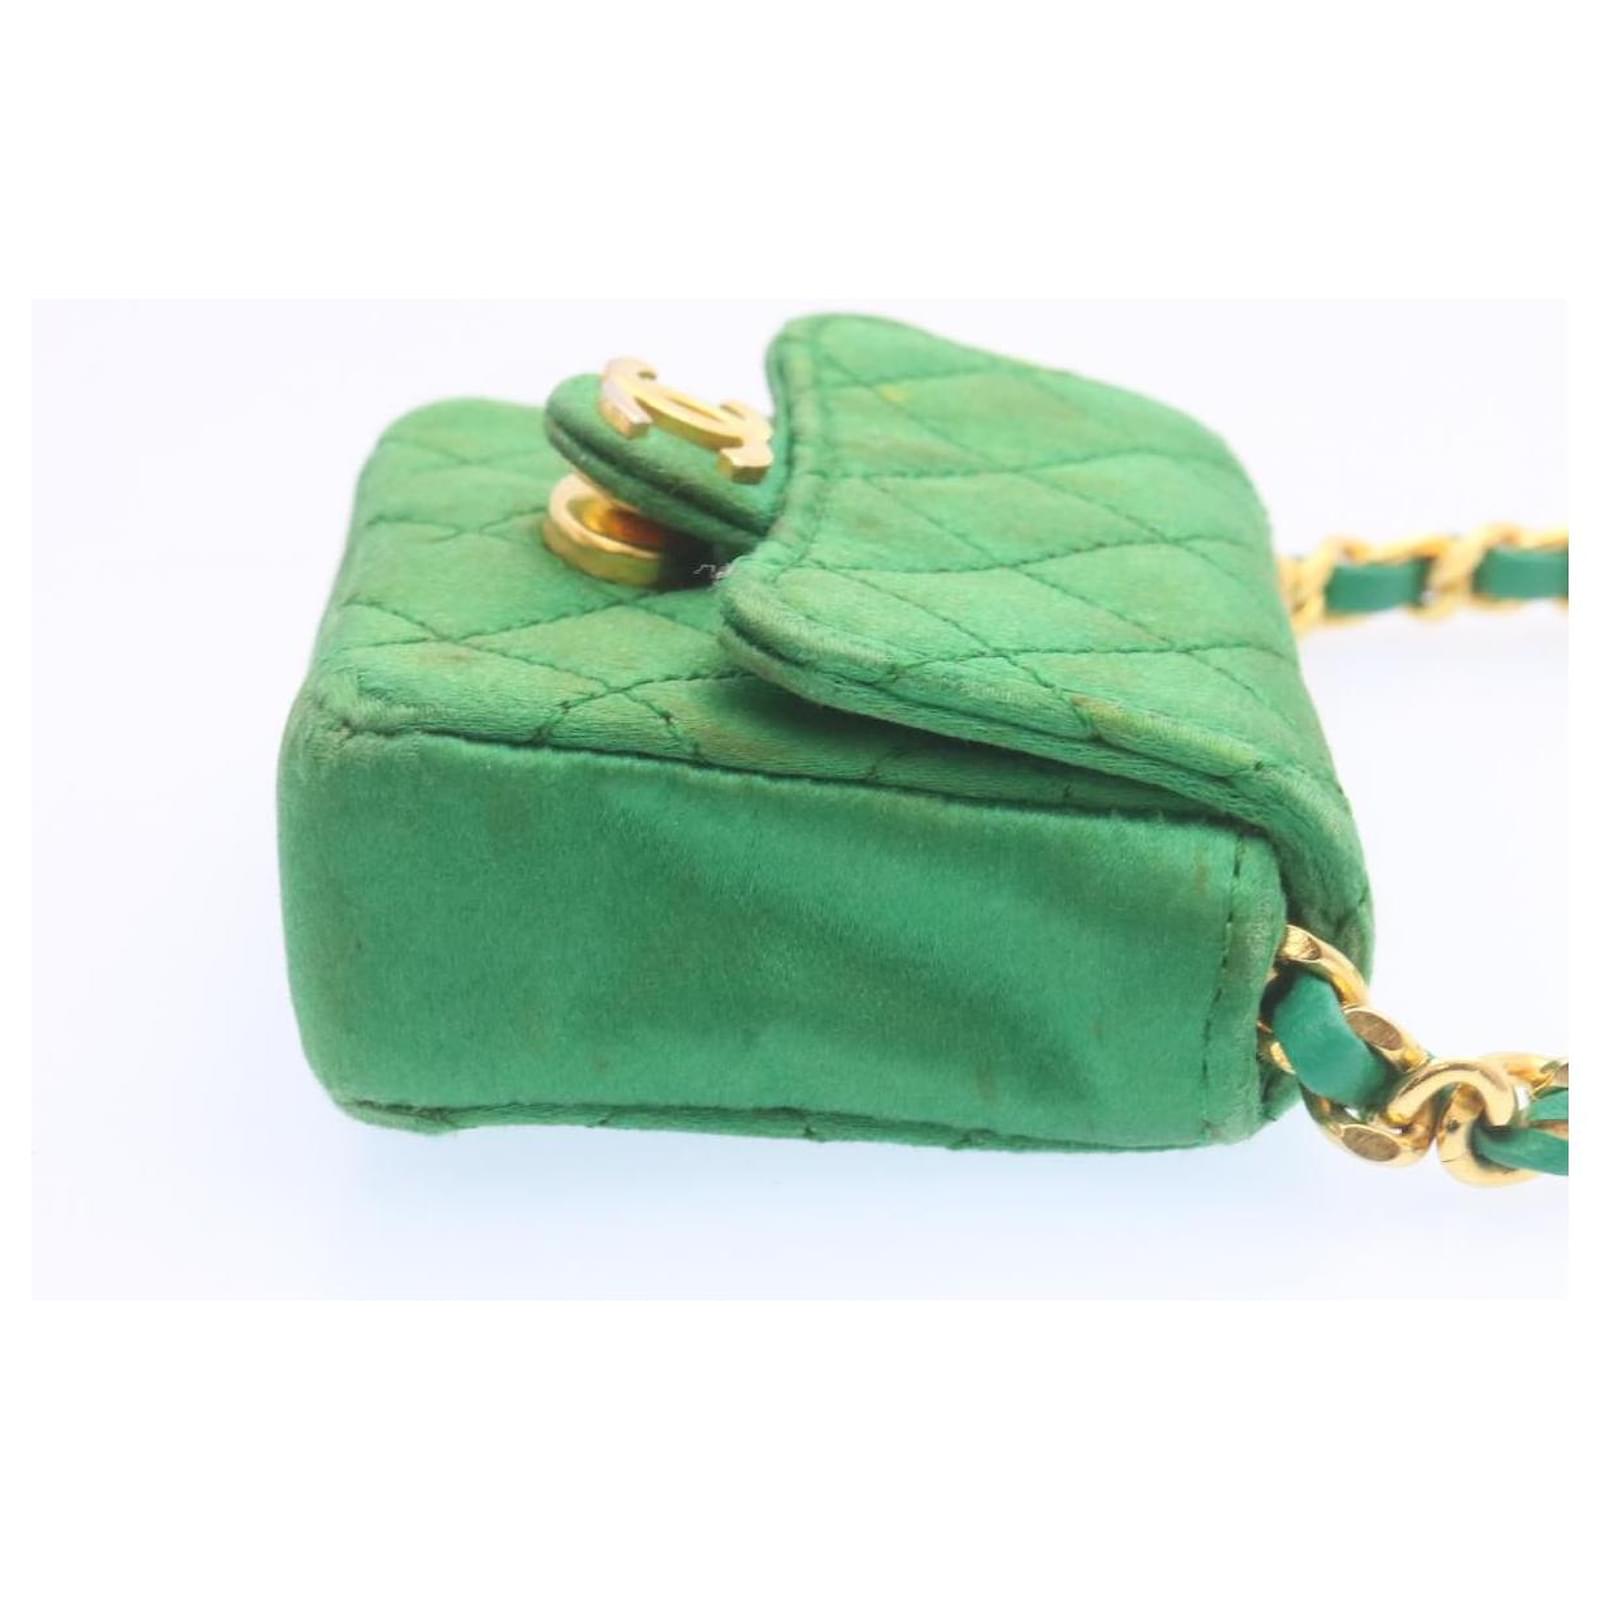 Chanel Leather Strap Handbag - 2,425 For Sale on 1stDibs  vintage chanel  bag with leather strap, chanel bag leather strap, chanel leather strap bag